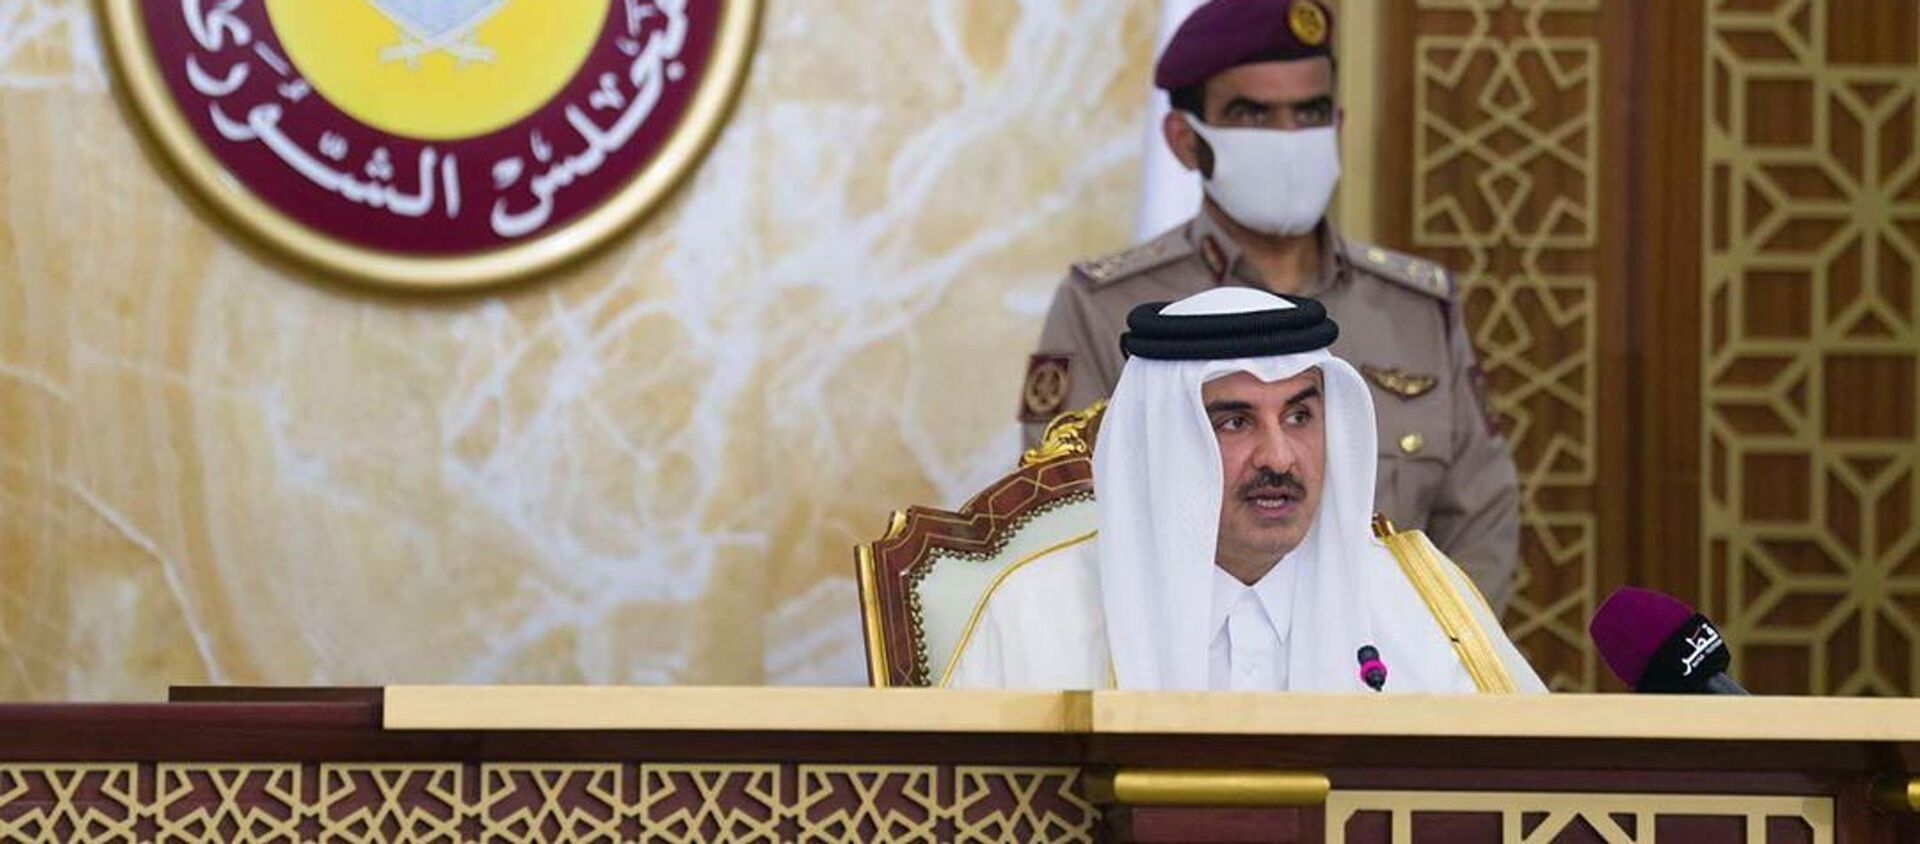 أمير قطر الشيخ تميم بن حمد آل ثاني يلقي كلمة أمام مجلس الشورى في الدوحة، قطر، 3 نوفمبر/ تشرين الثاني 2020 - سبوتنيك عربي, 1920, 11.08.2021